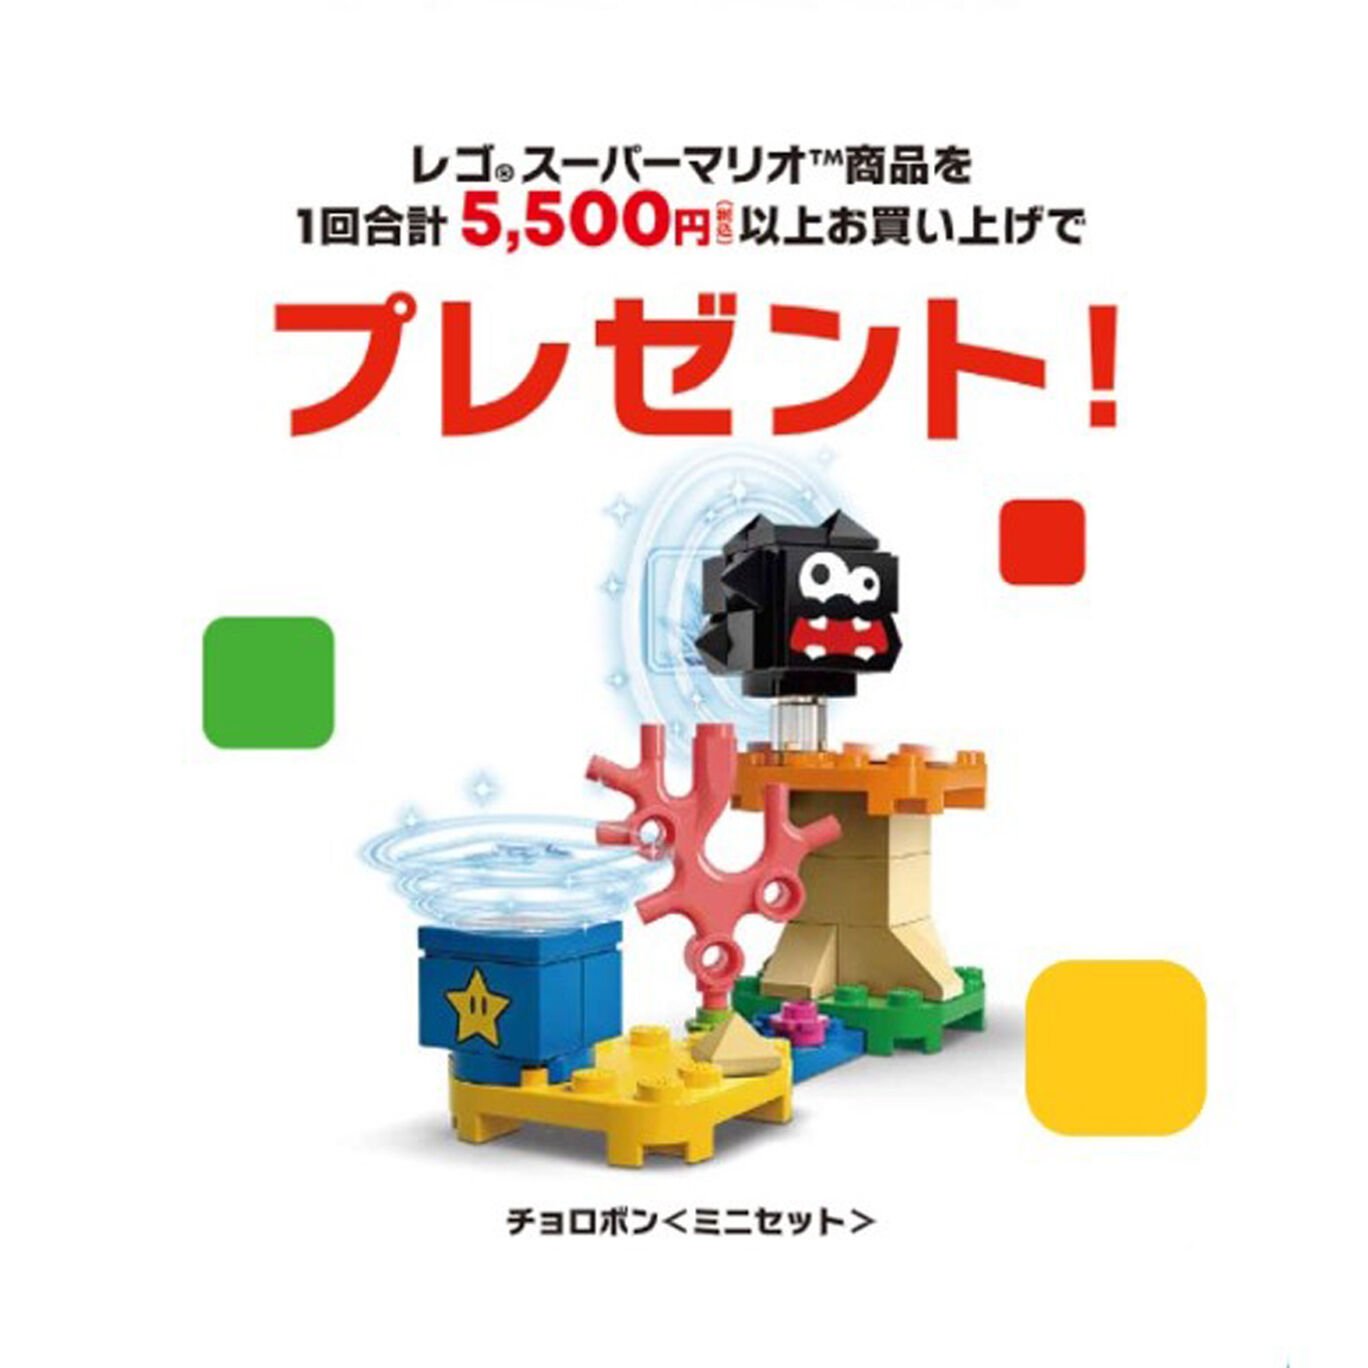 【新商品】レゴ®スーパーマリオ そらのうえの チョロボン チャレンジ